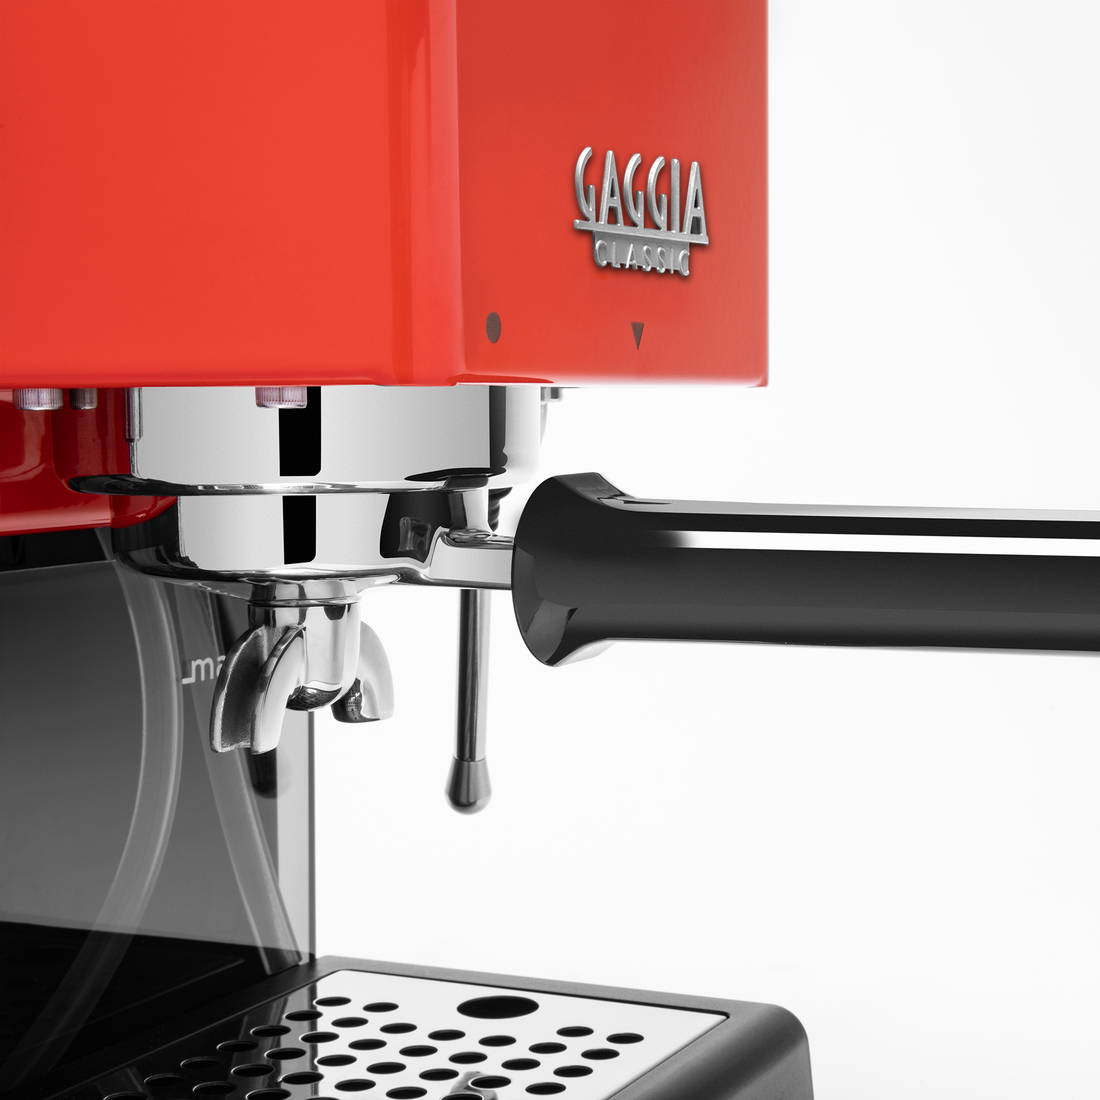 Gaggia Classic Evo Pro Espresso Machine in Lobster Red with Blackened Oak